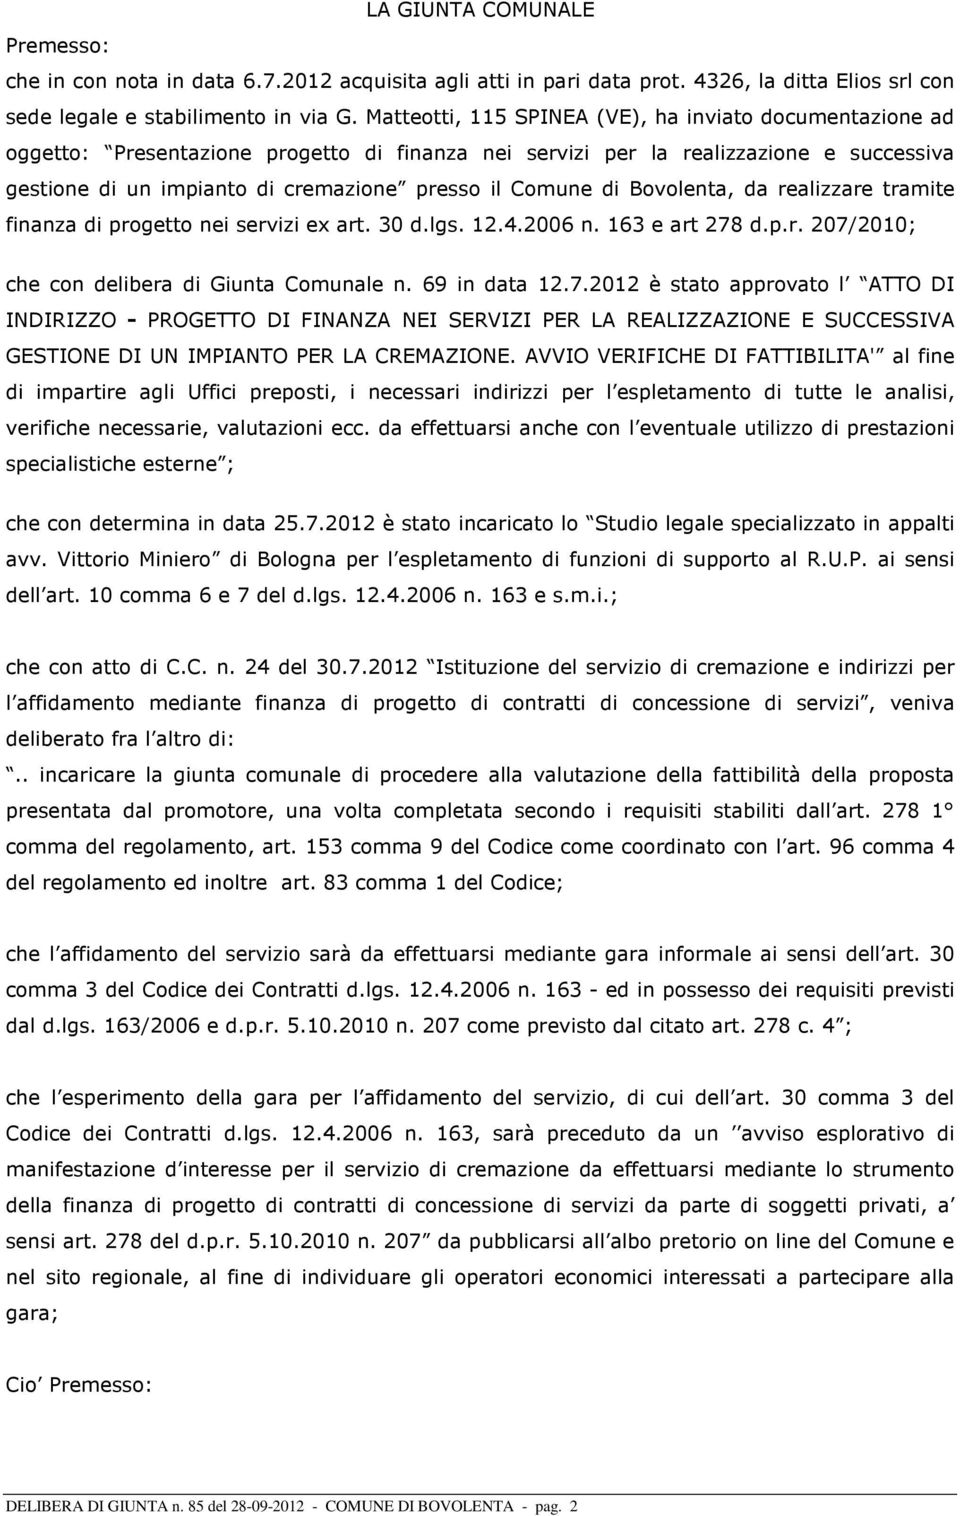 Comune di Bovolenta, da realizzare tramite finanza di progetto nei servizi ex art. 30 d.lgs. 12.4.2006 n. 163 e art 278